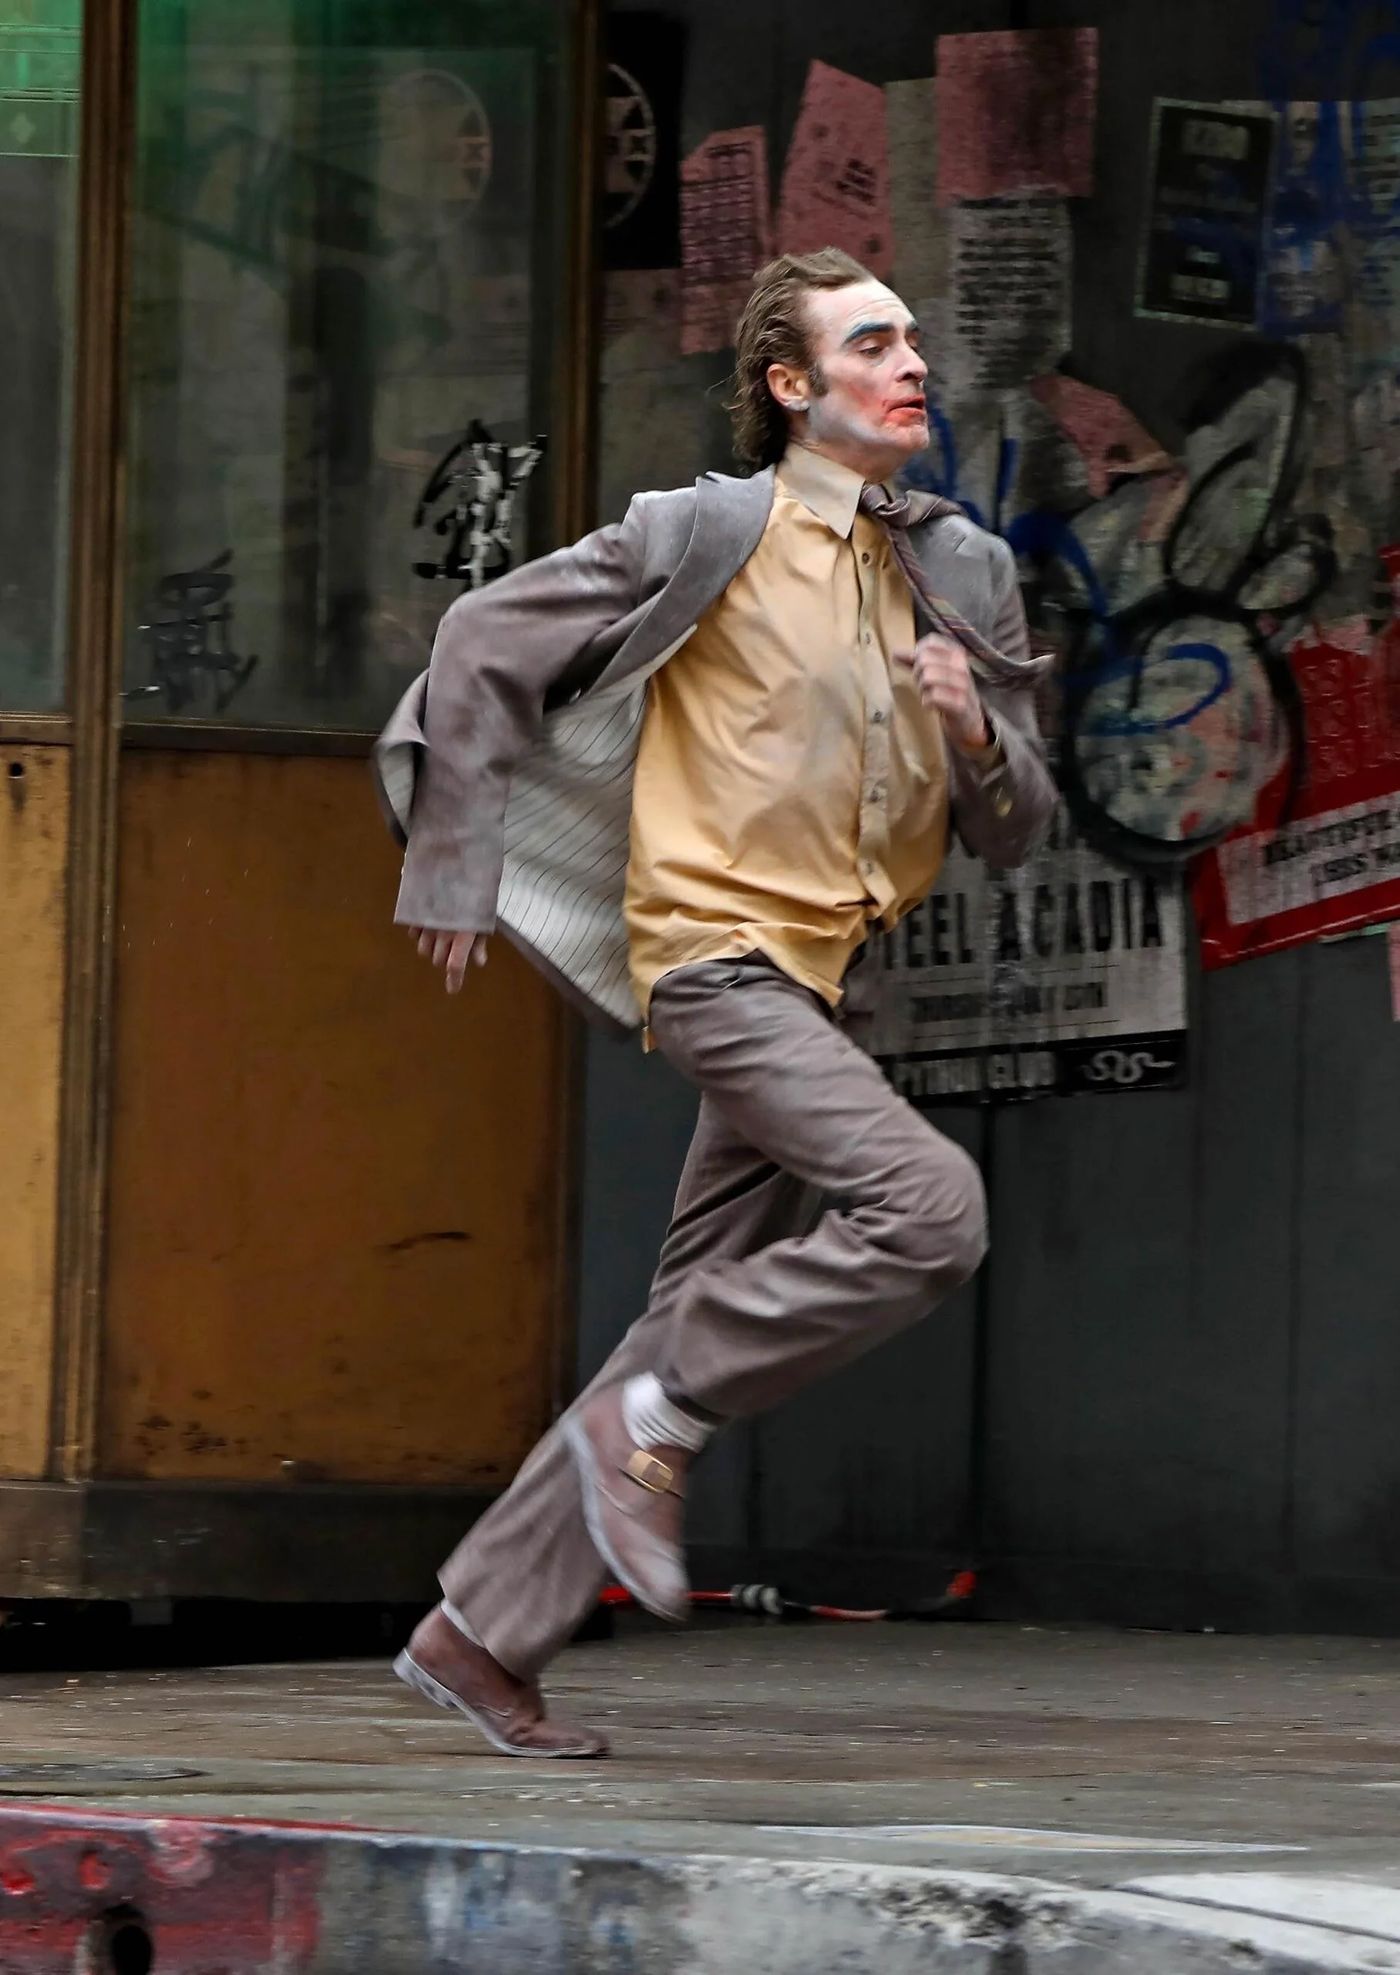 Joker 2 Set Photos Reveal Joaquin Phoenix with Multiple Jokers